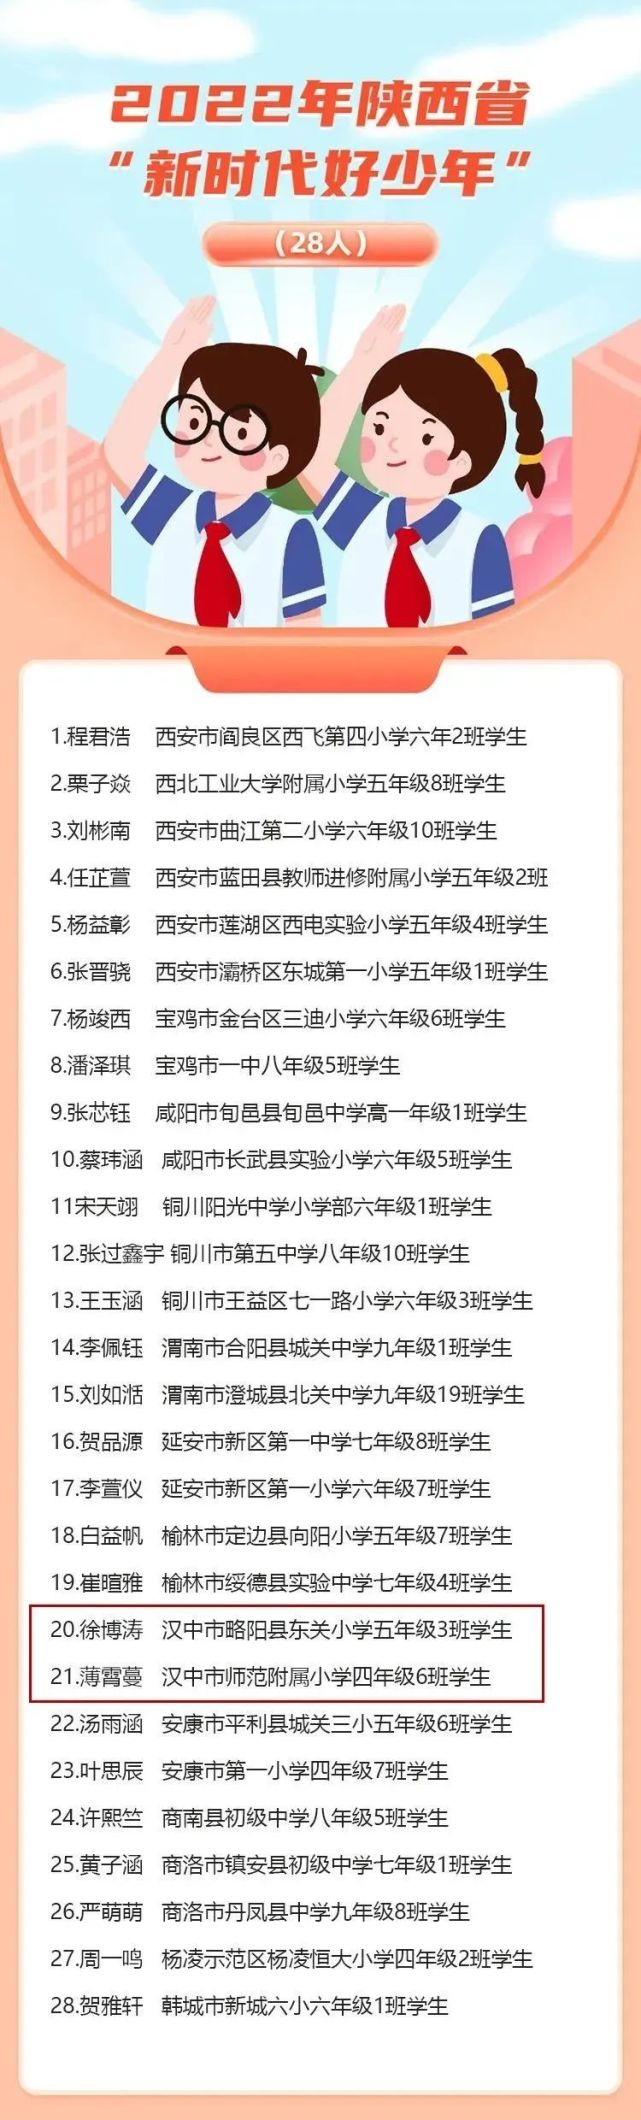 汉阴中学2016老师名单_汉中职业技术学院老师好吗_汉中中学所有老师名单